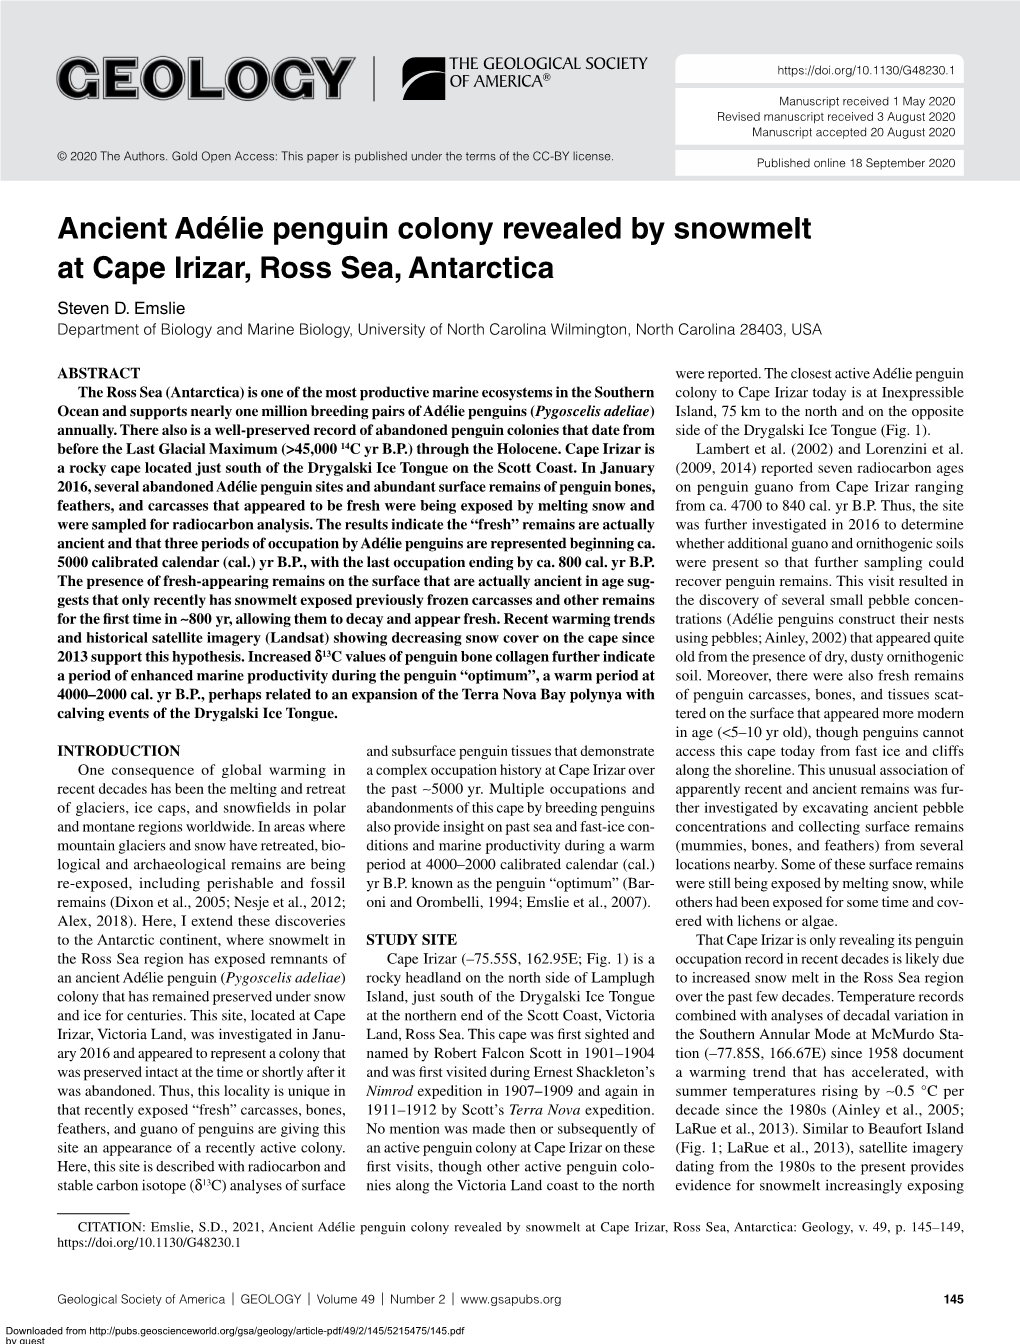 Ancient Adélie Penguin Colony Revealed by Snowmelt at Cape Irizar, Ross Sea, Antarctica Steven D